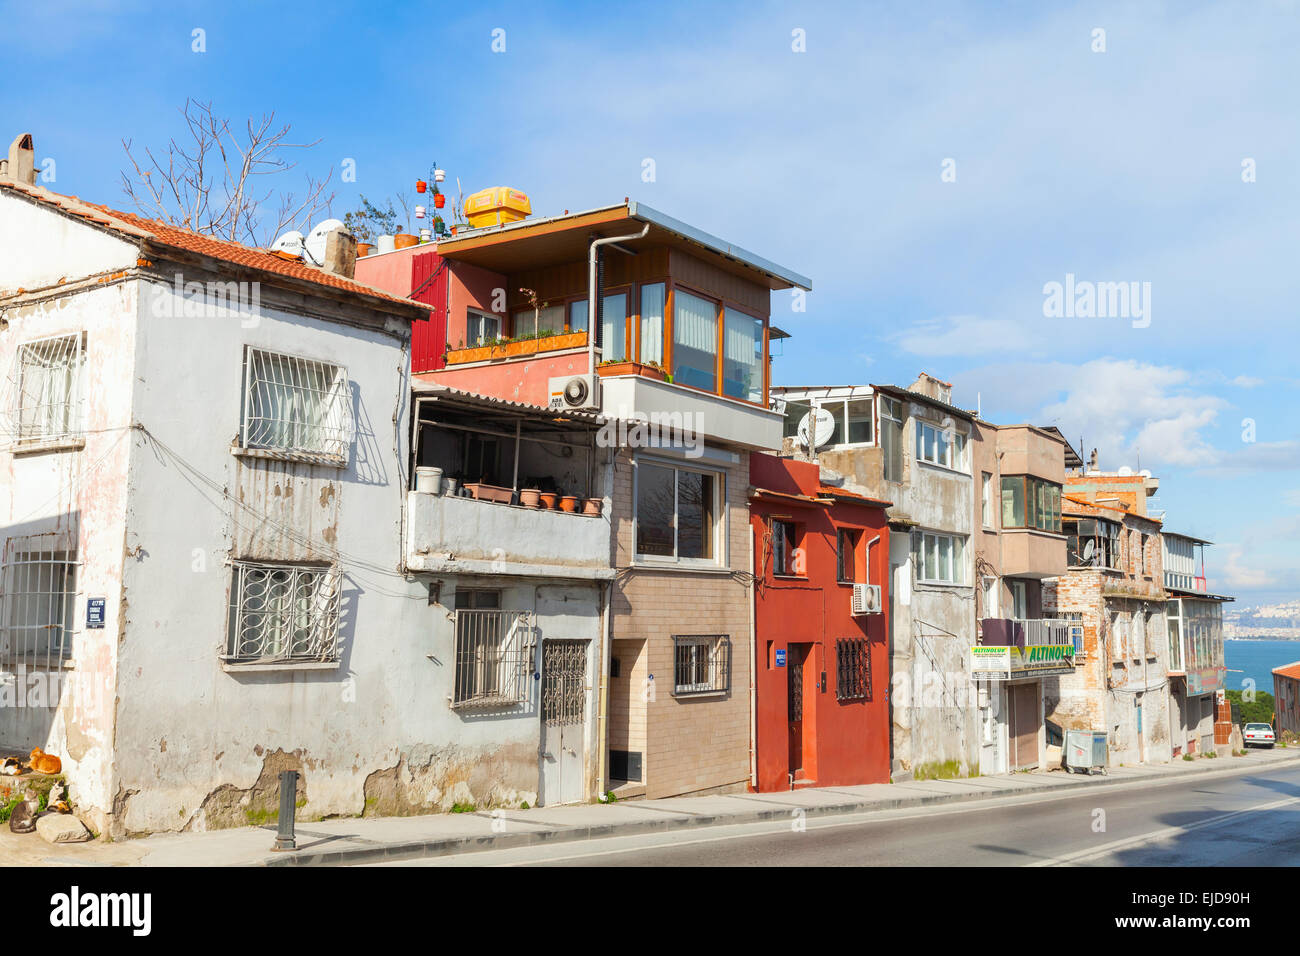 Izmir, Turquie - 12 Février 2015 : Street view ordinaire avec de petites maisons individuelles dans une rangée, vieille ville d'Izmir Banque D'Images